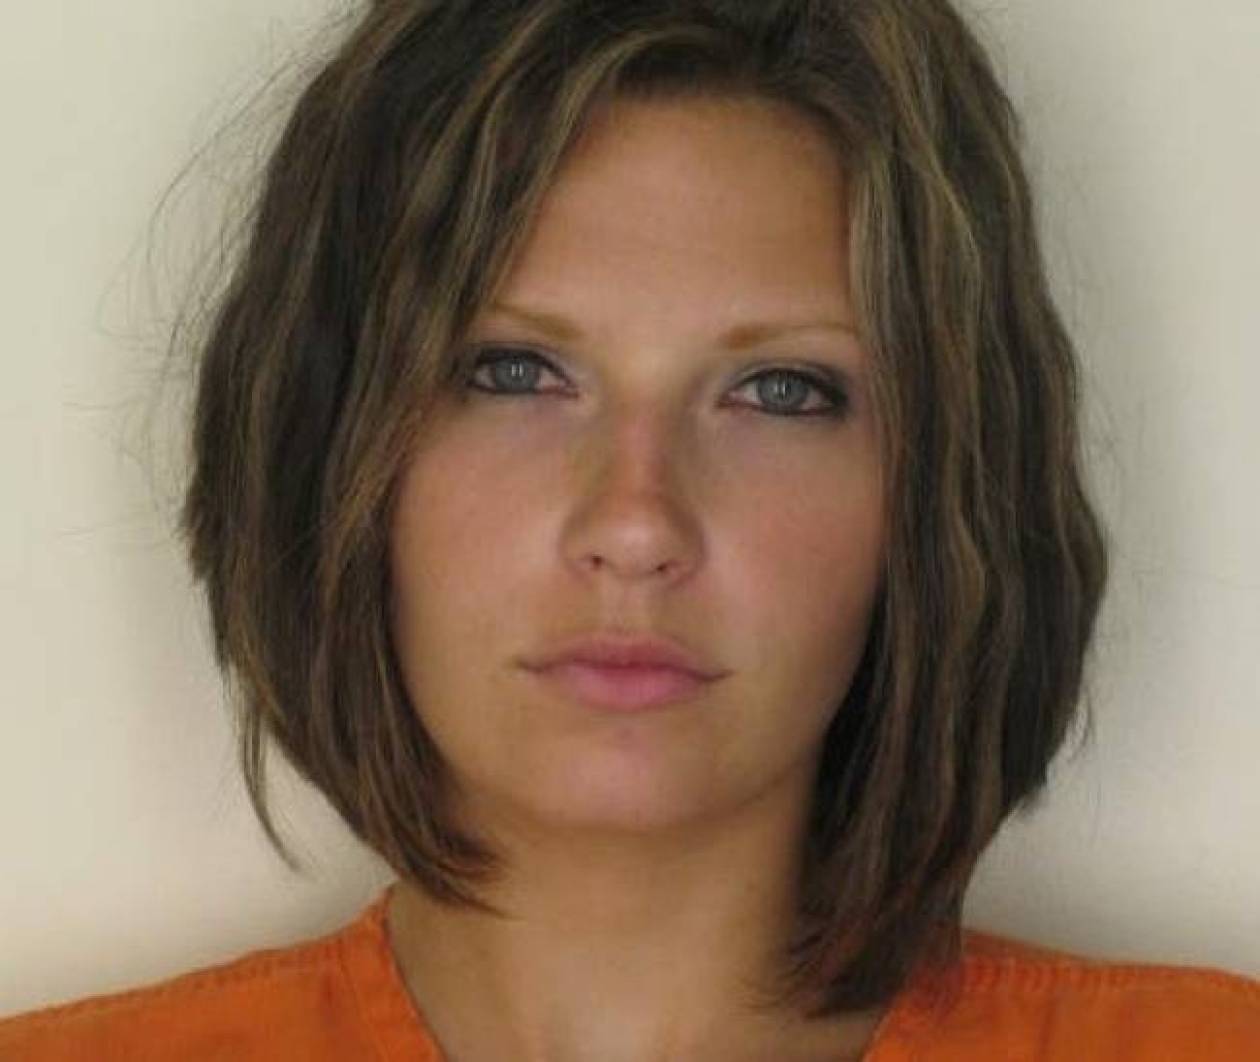 Η πιο όμορφη κρατούμενη που ξετρέλανε το διαδίκτυο επιστρέφει! (pics)